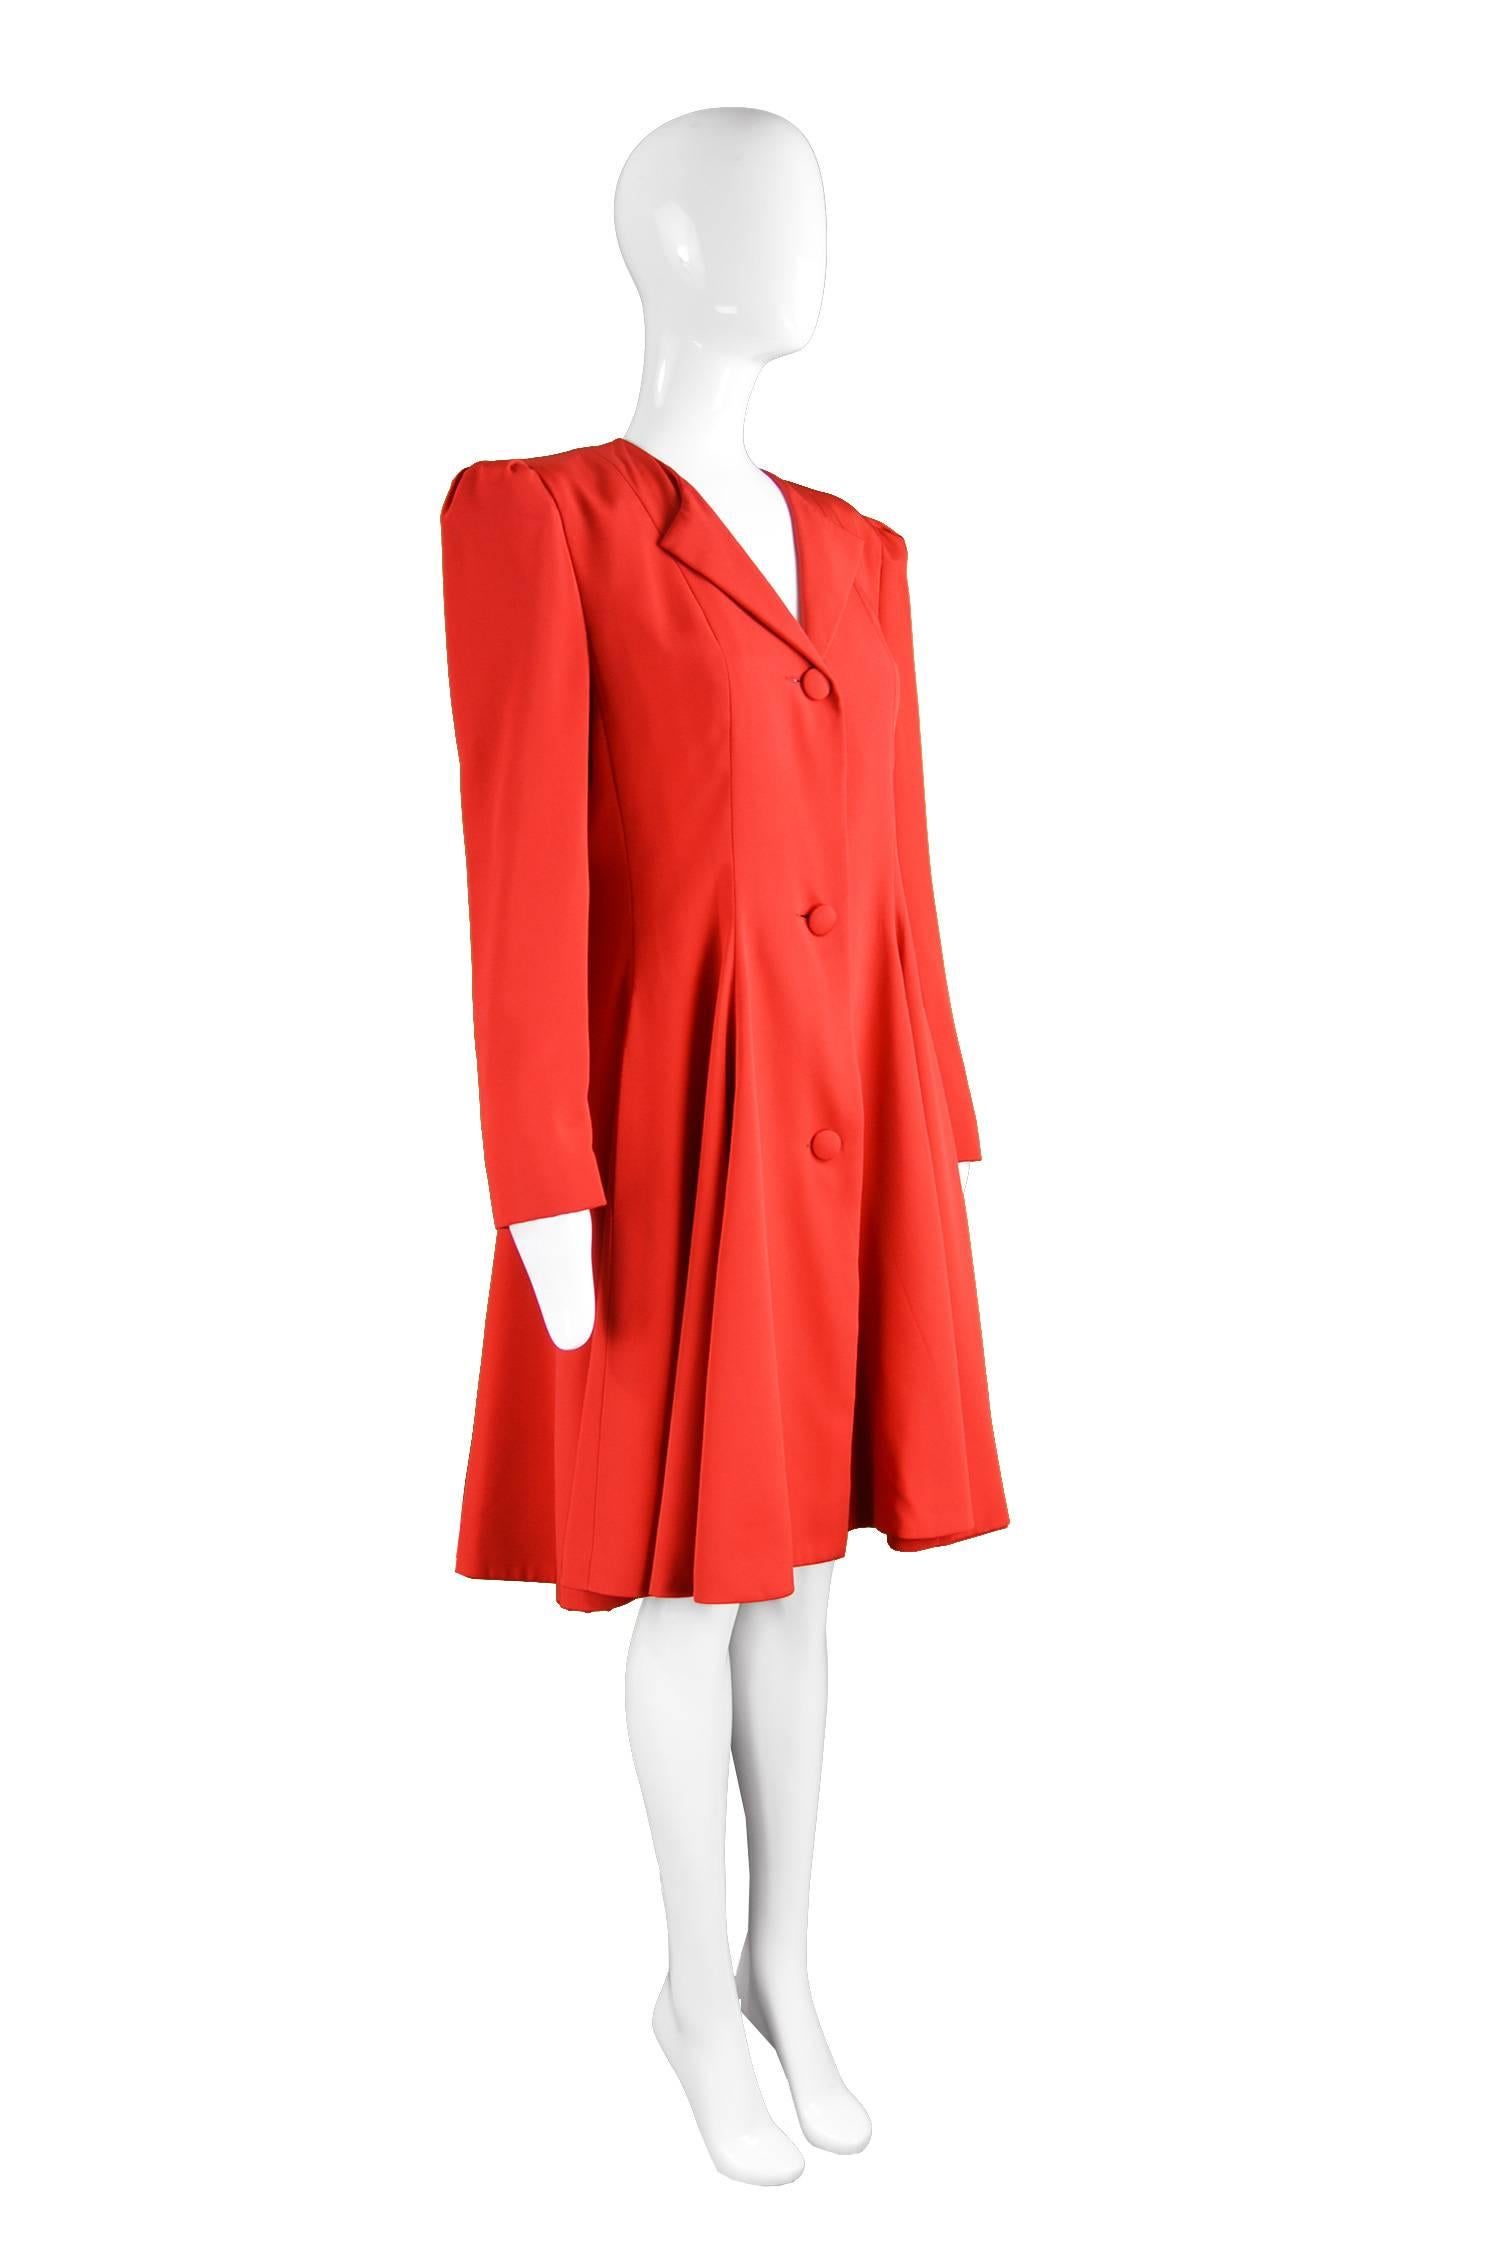 Carolina Herrera For Neiman Marcus Red Silk Full Skirt Evening Coat, 1980s 1